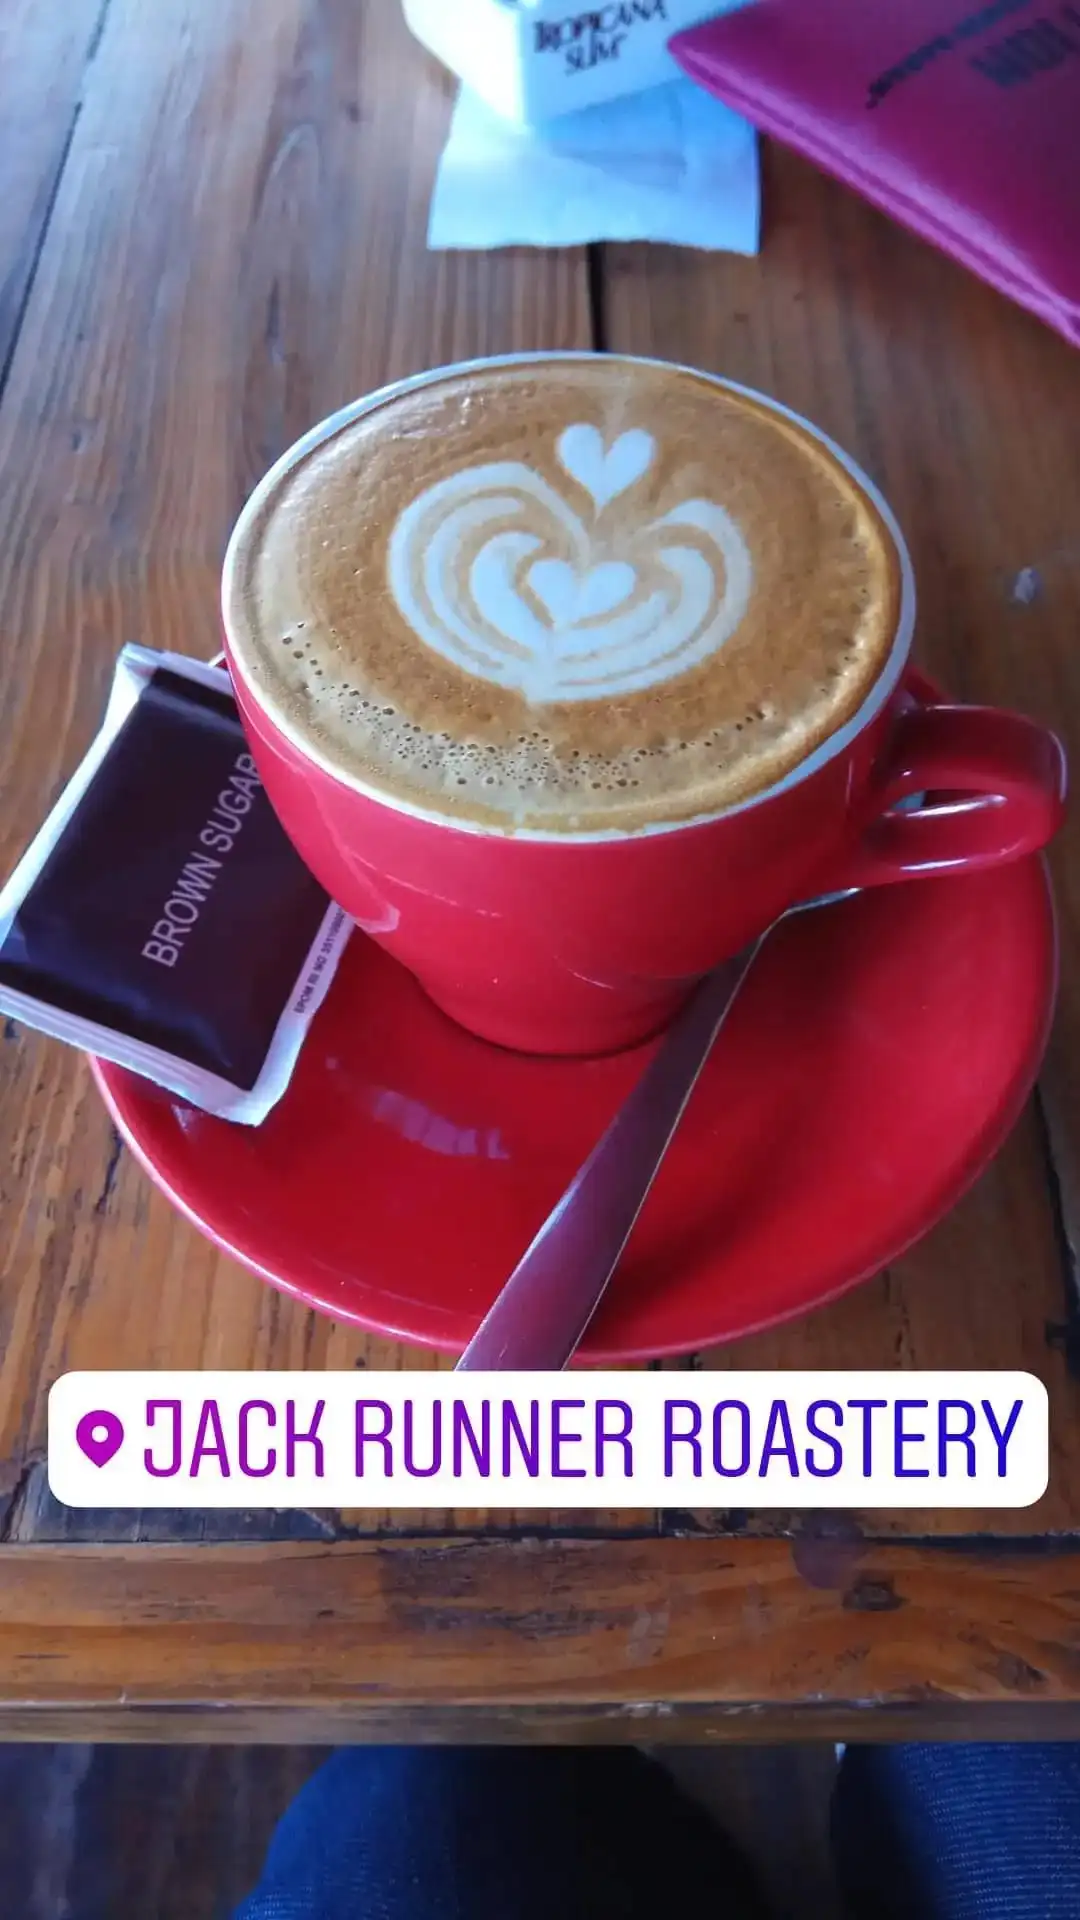 Jack Runner Roastery